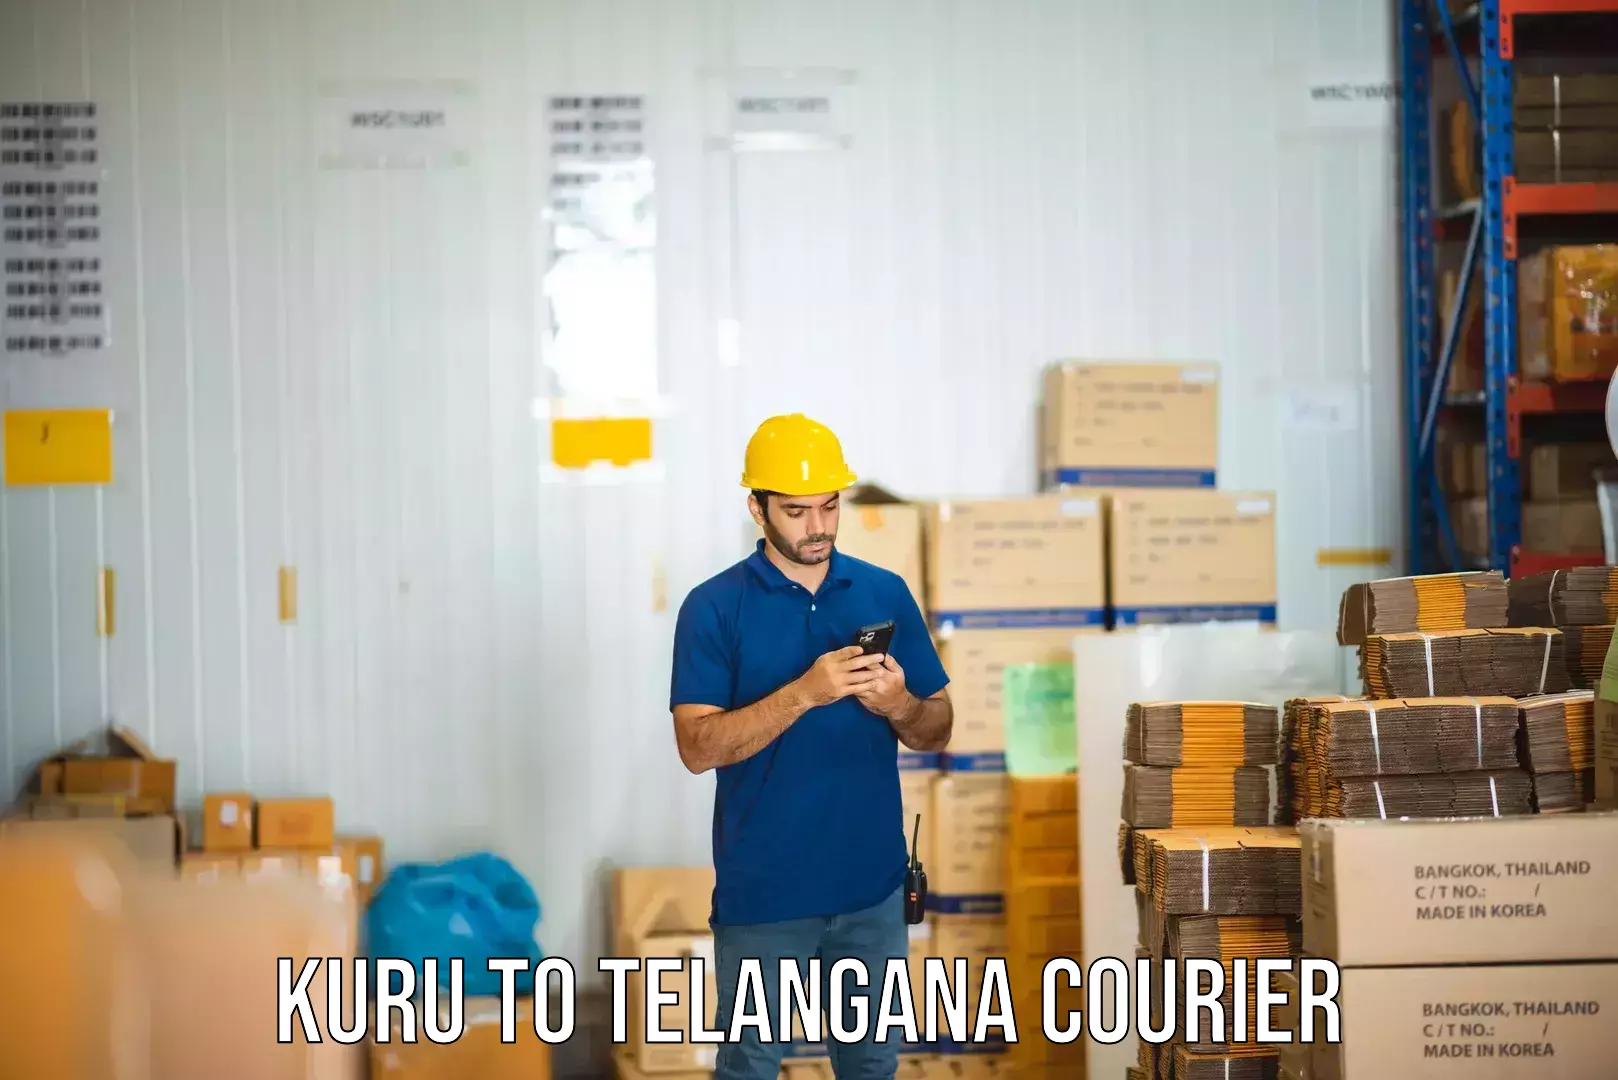 Advanced freight services Kuru to Telangana